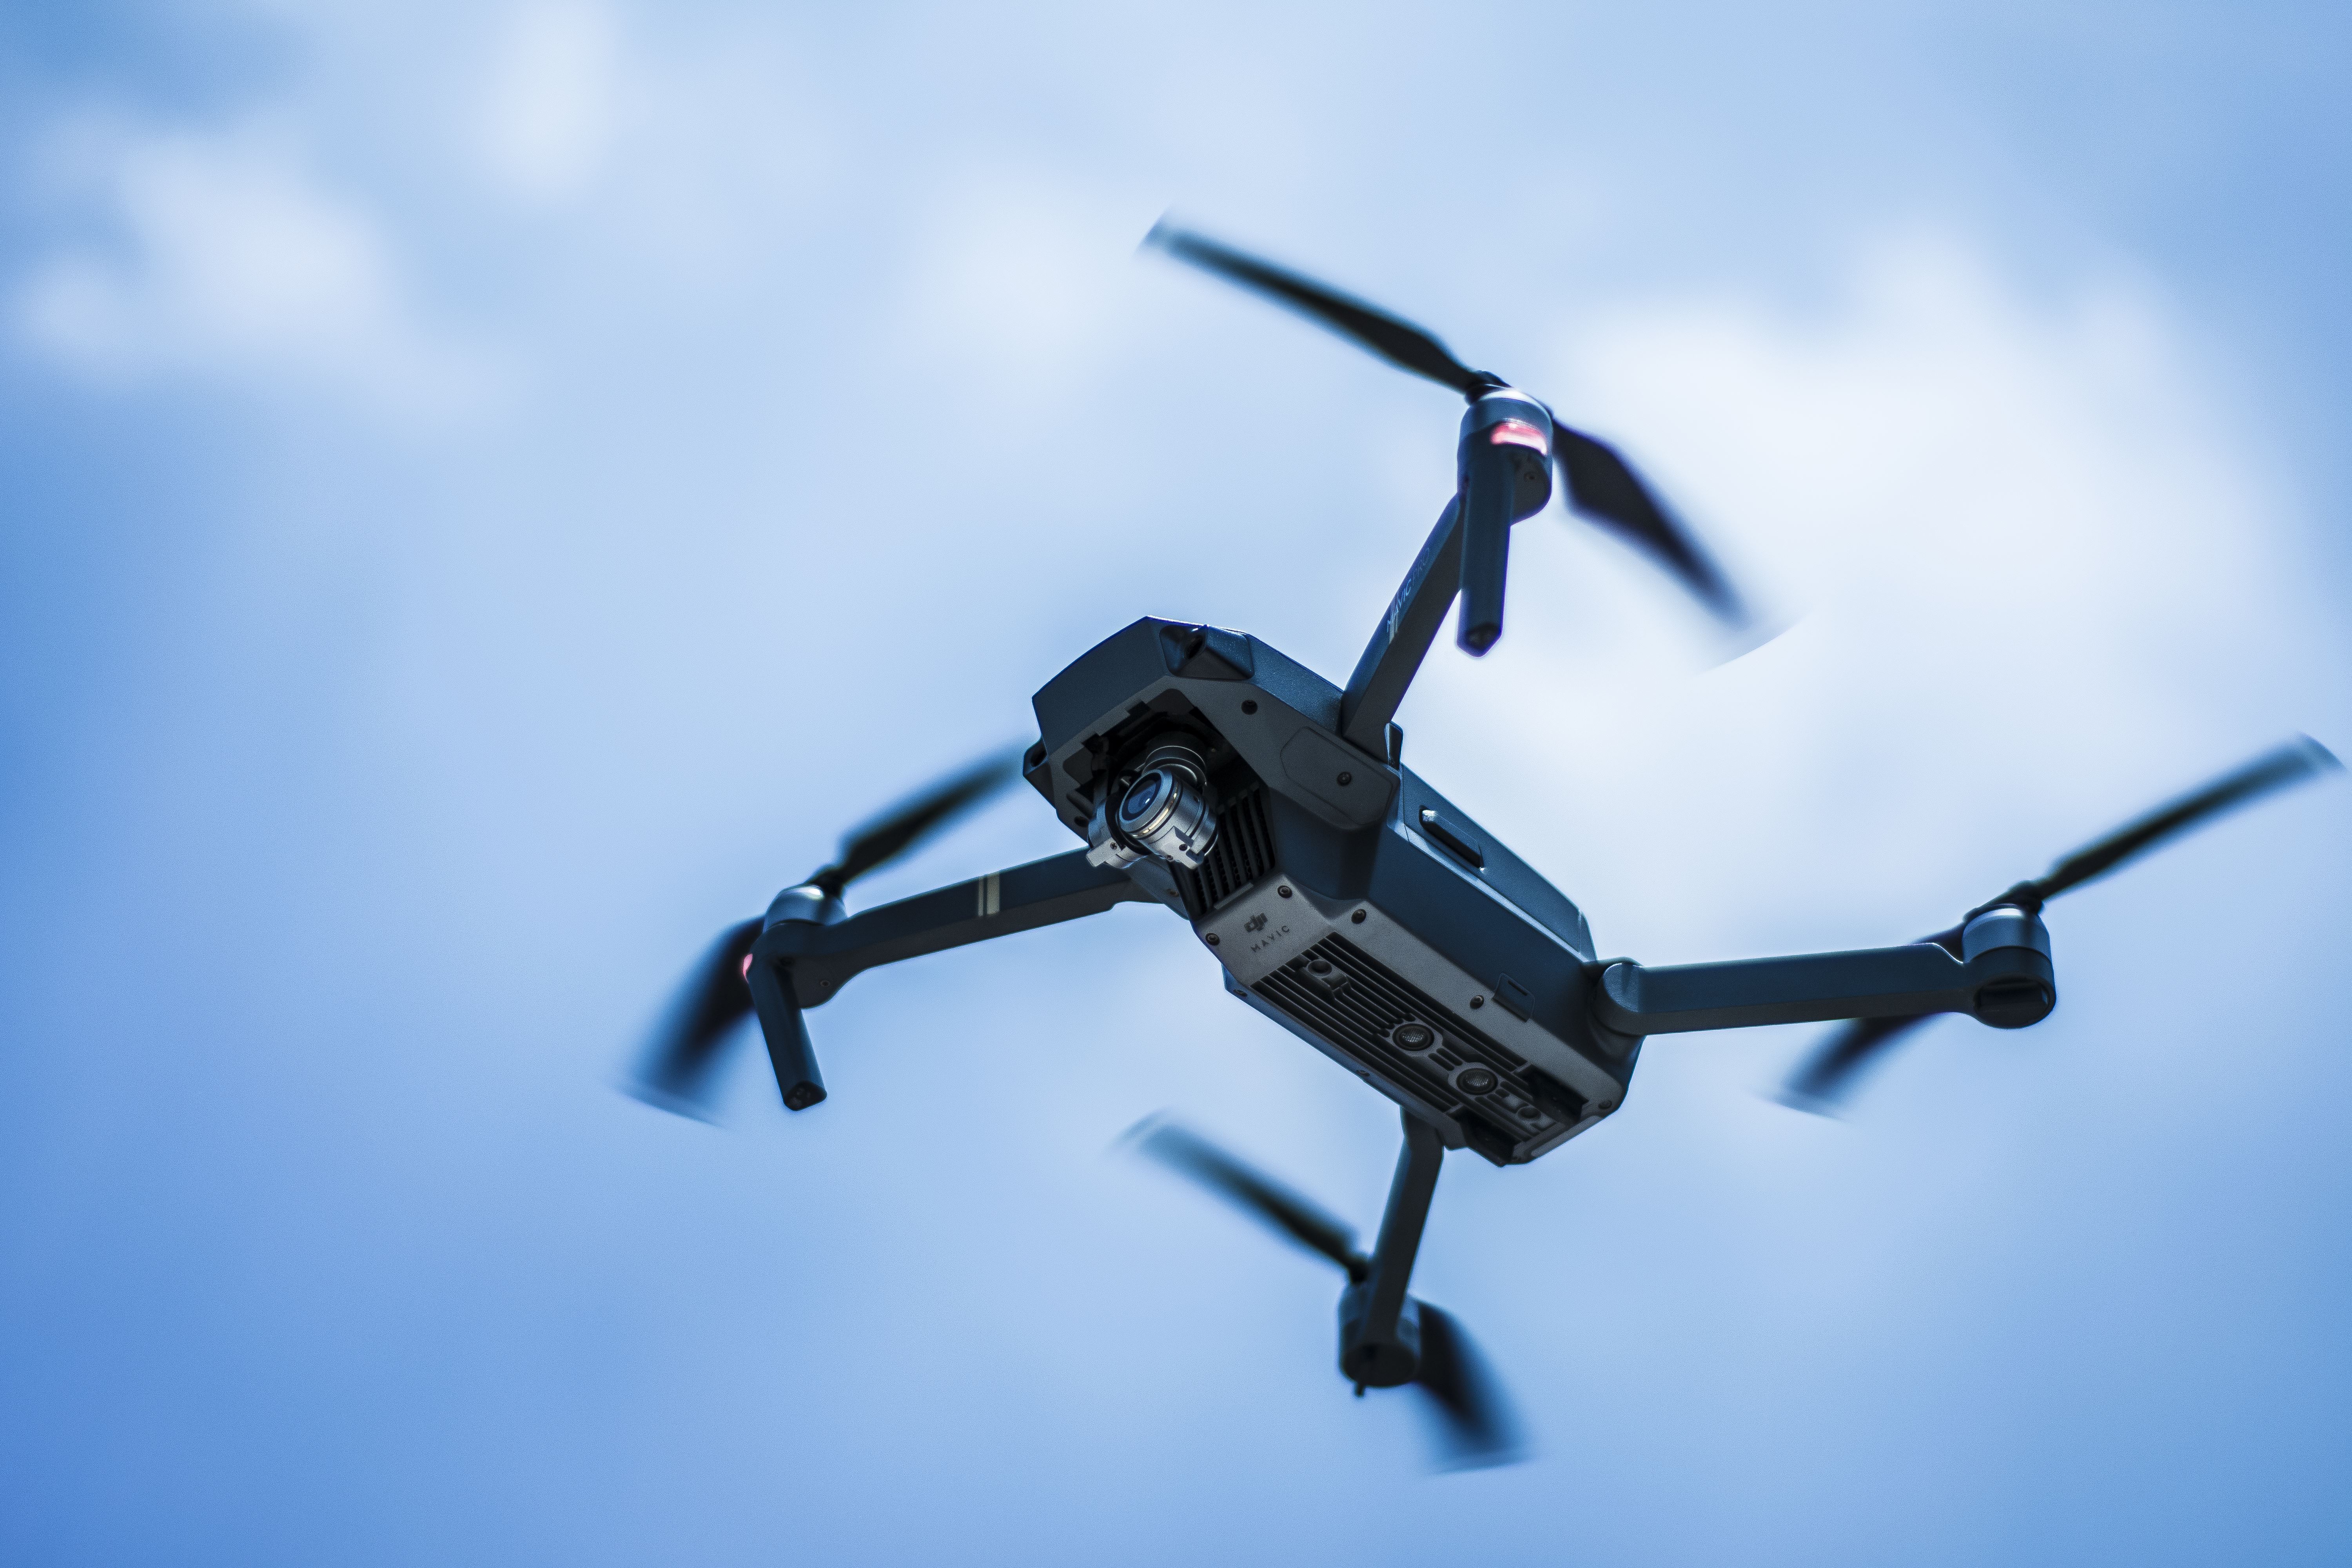 Bruk av droner for ulovlig aktivitet kan bli en greie, spesielt om dronene kan skjule hvem som eier dem.